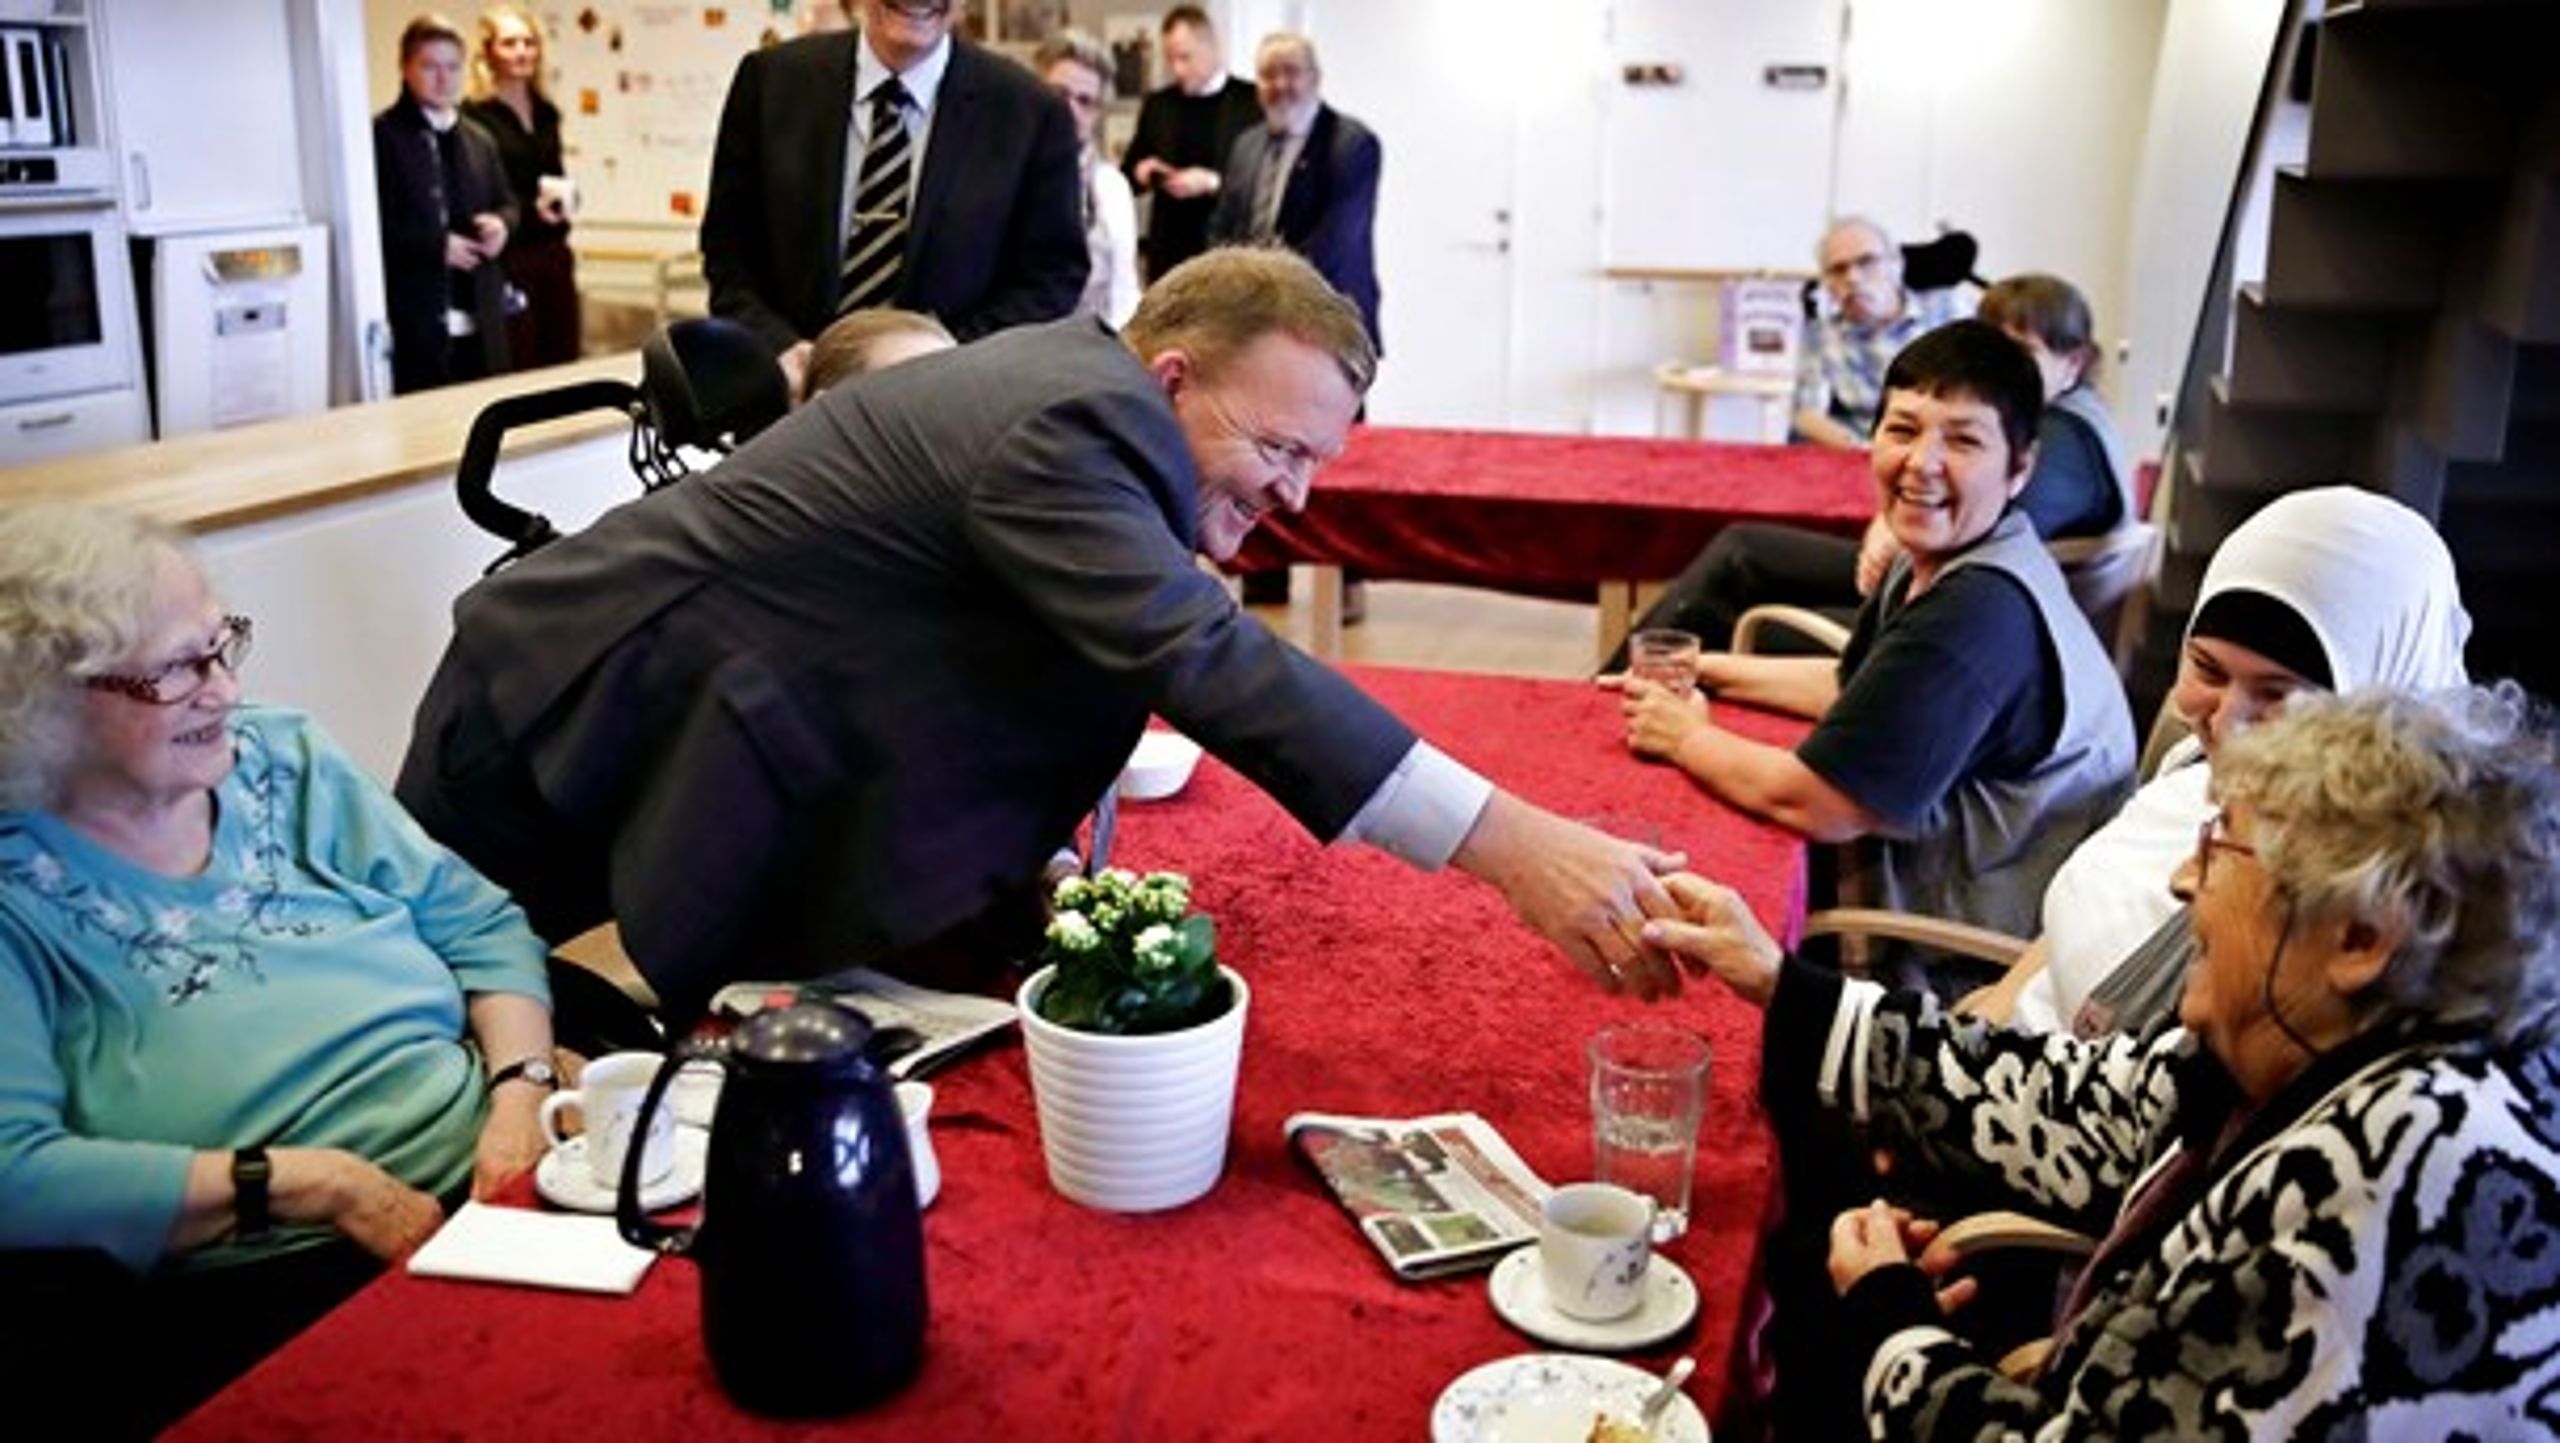 Halsnæs Kommune ønsker ikke, at politikere bruger kommunens plejehjem til personlig valgkamp (Arkivfoto fra kommunalvalgkamp i 2017).&nbsp;